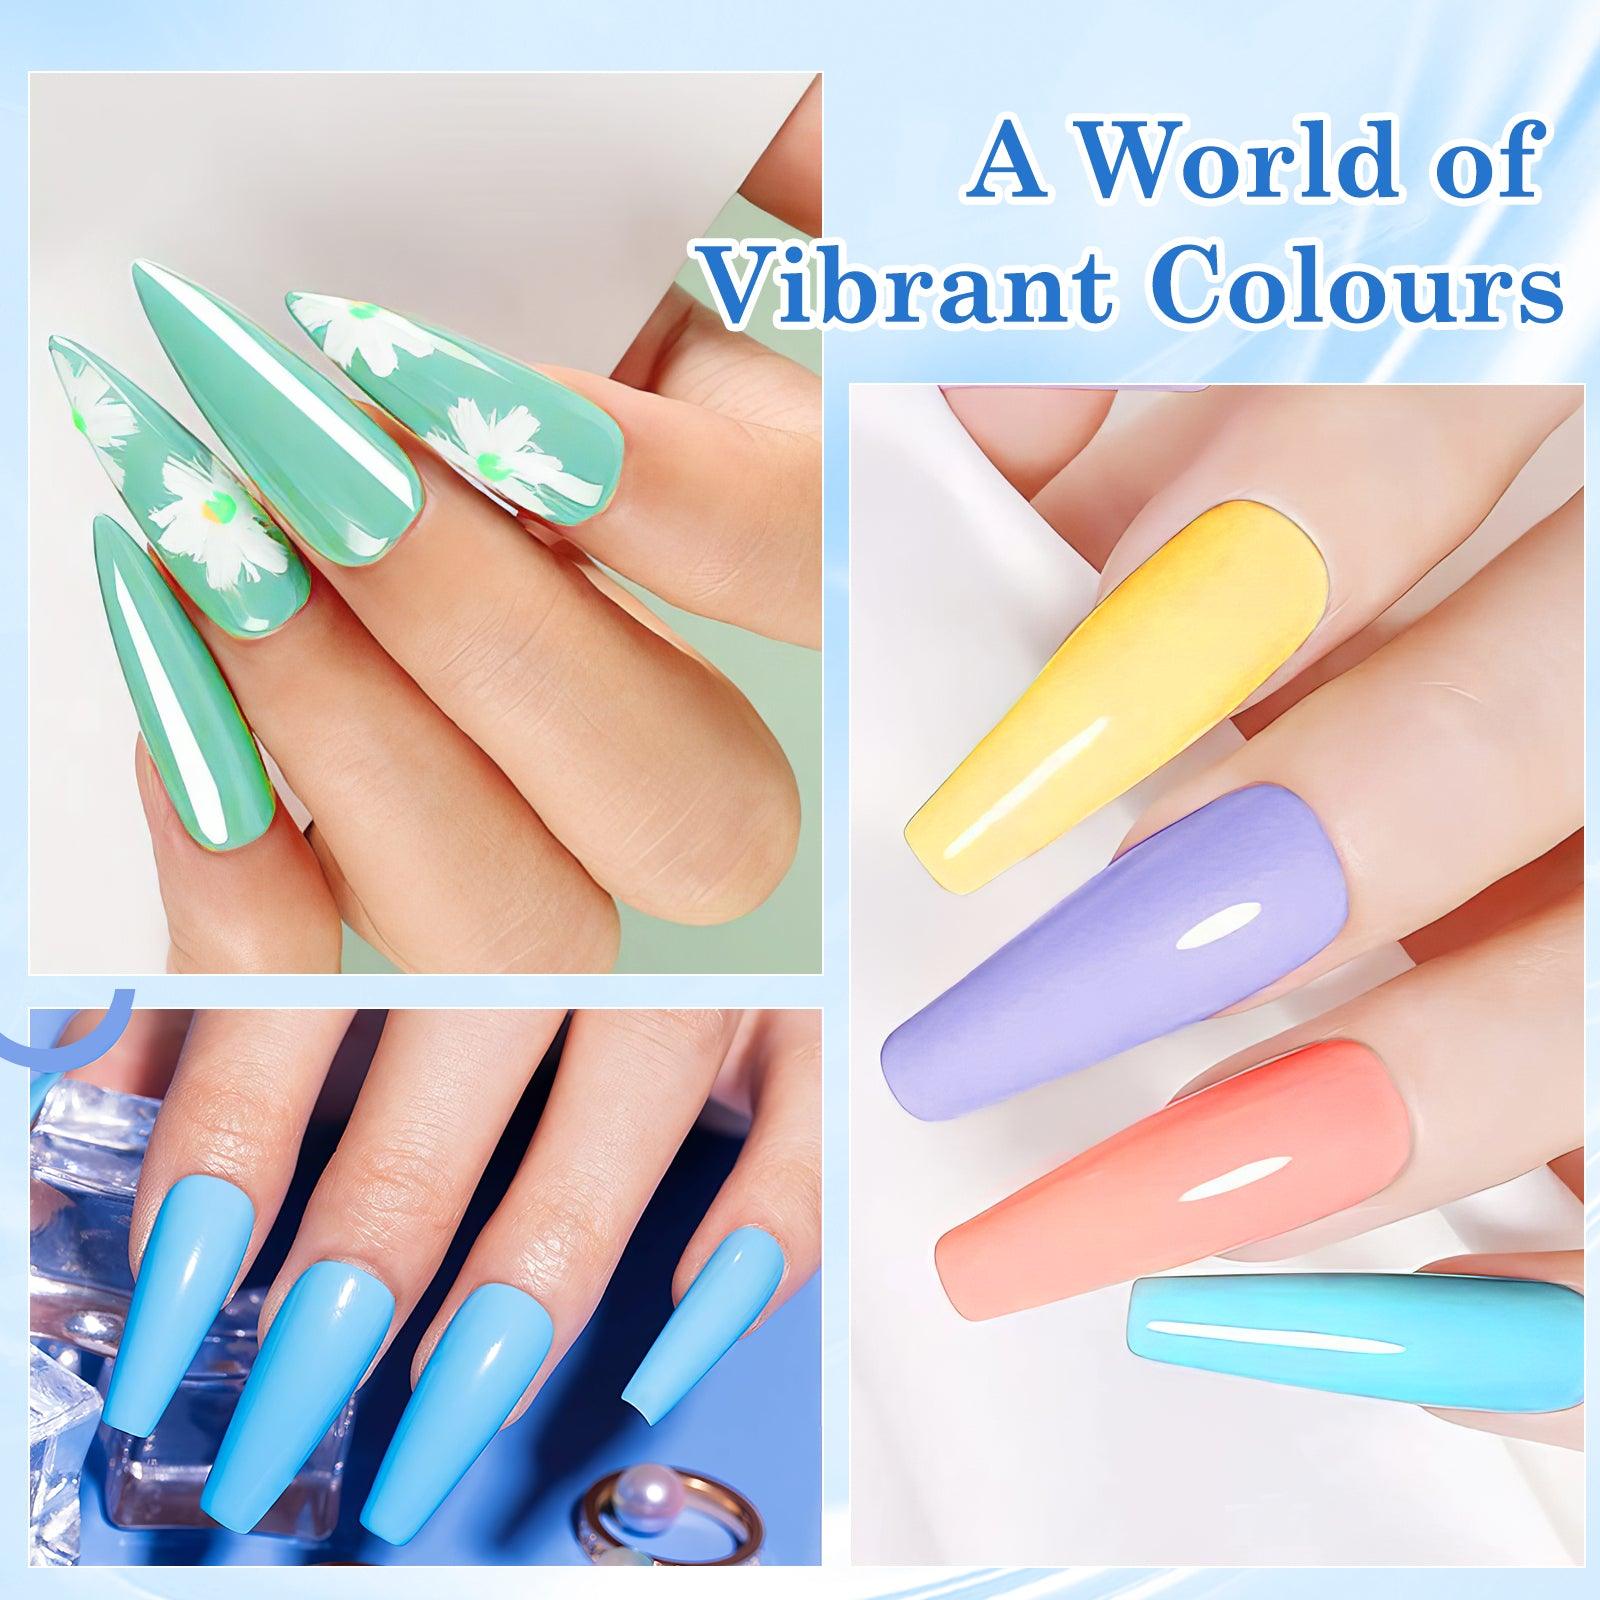 Rainbow-6 color nail polish - LKEnail